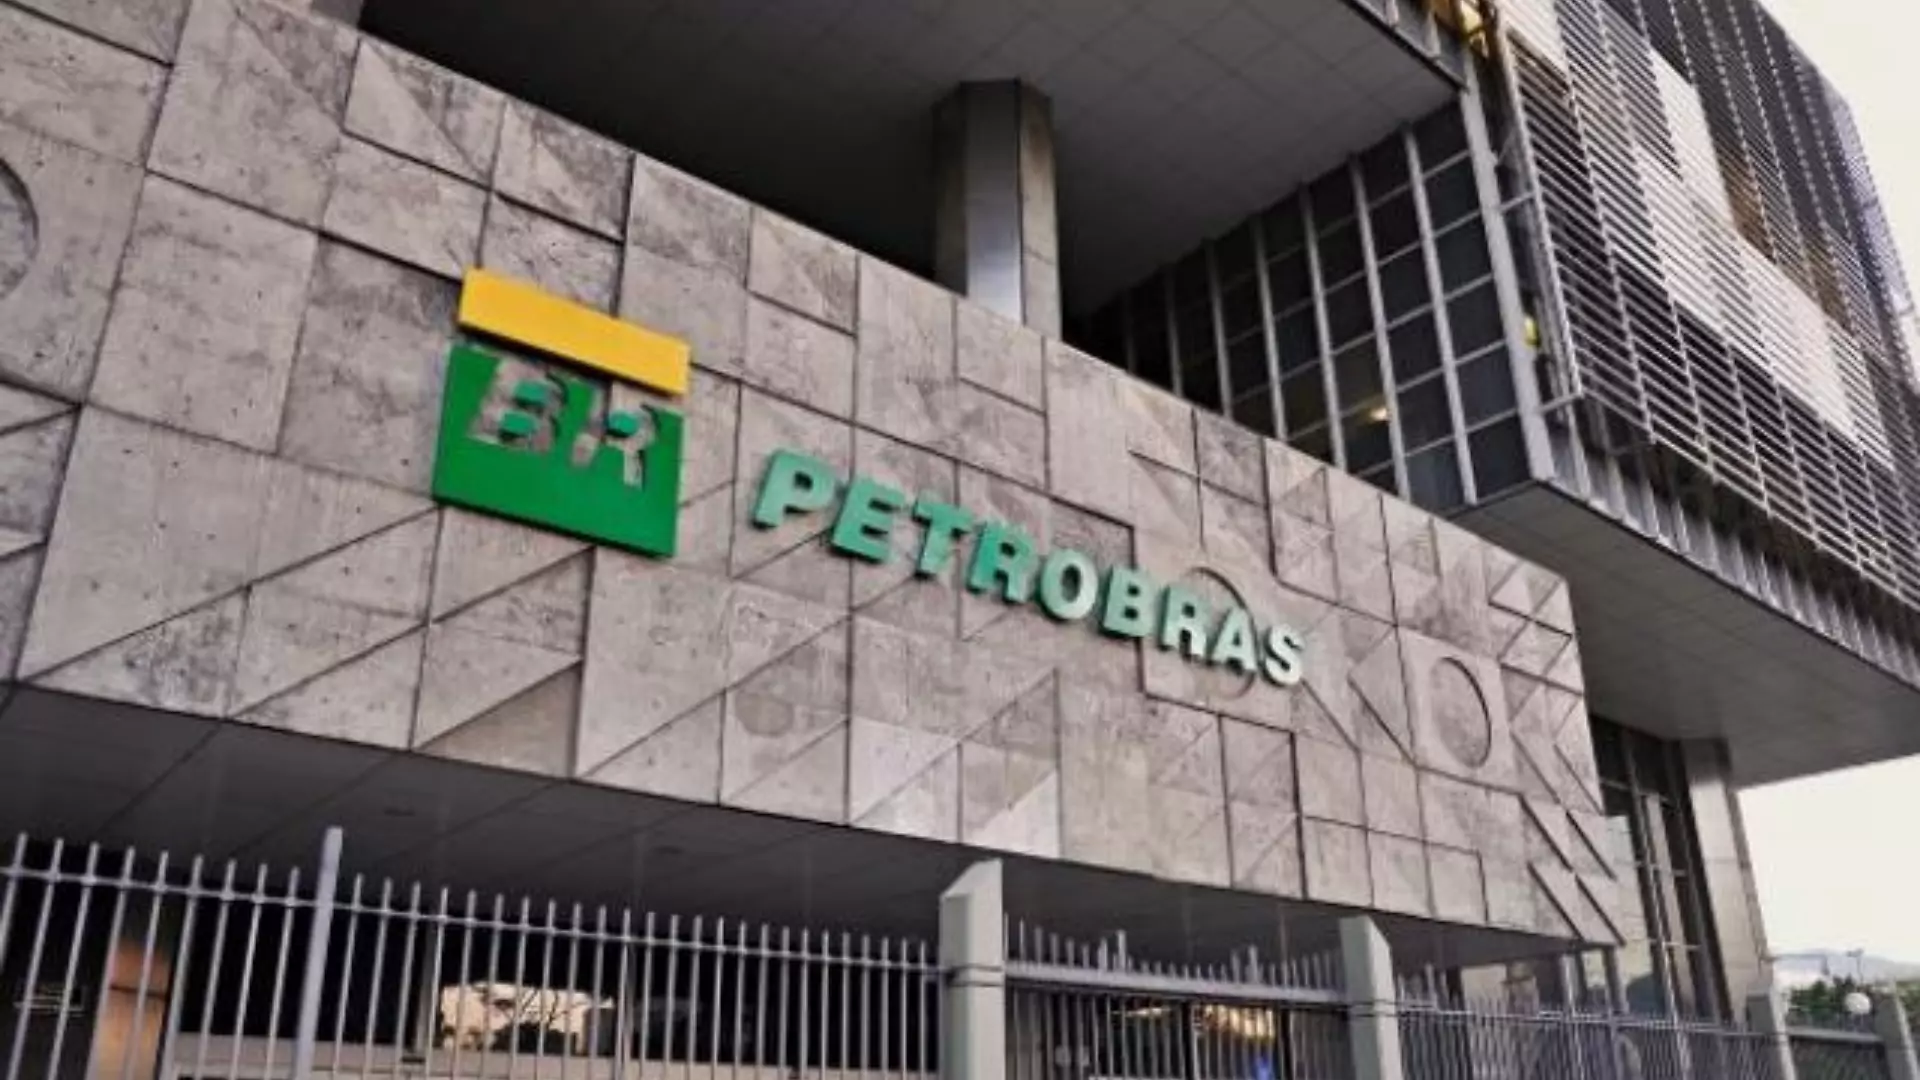 Petrobras e BNDES vão estruturar fundo de apoio a startups de inovação na área de transição energética. Na imagem: Fachada da Petrobras, na avenida Chile, no Rio de Janeiro (Foto: Reprodução/SBT News)